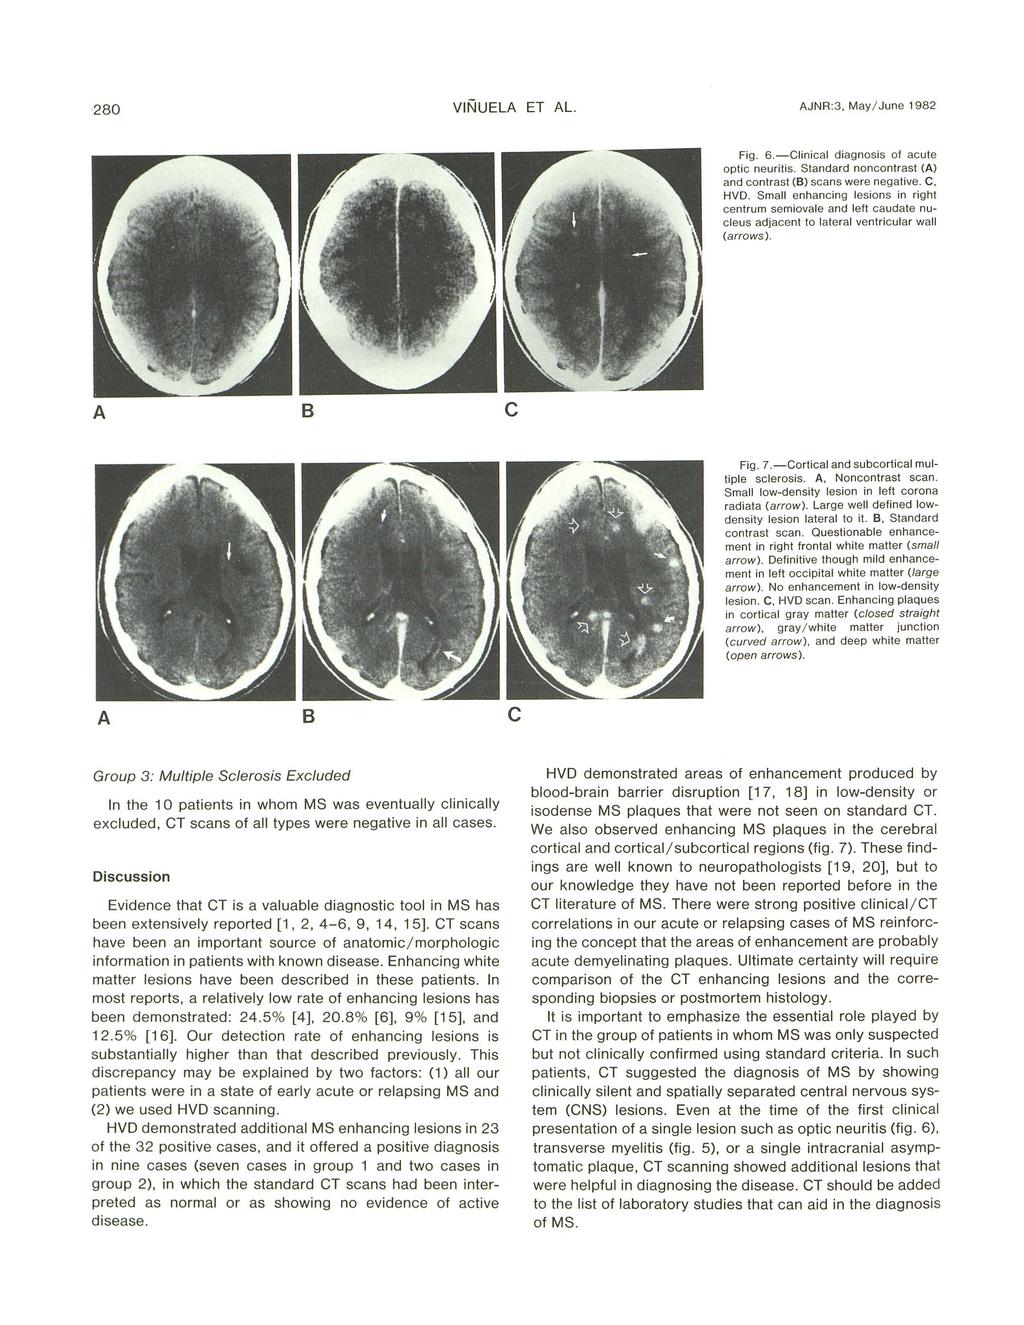 280 VINUEL ET L. JNR:3, May/ June 1982 Fig. 6. - Clinial diag nosis of aute opti neuritis. Standard nonontrast () and ontrast () sans were negative. C, HVD.